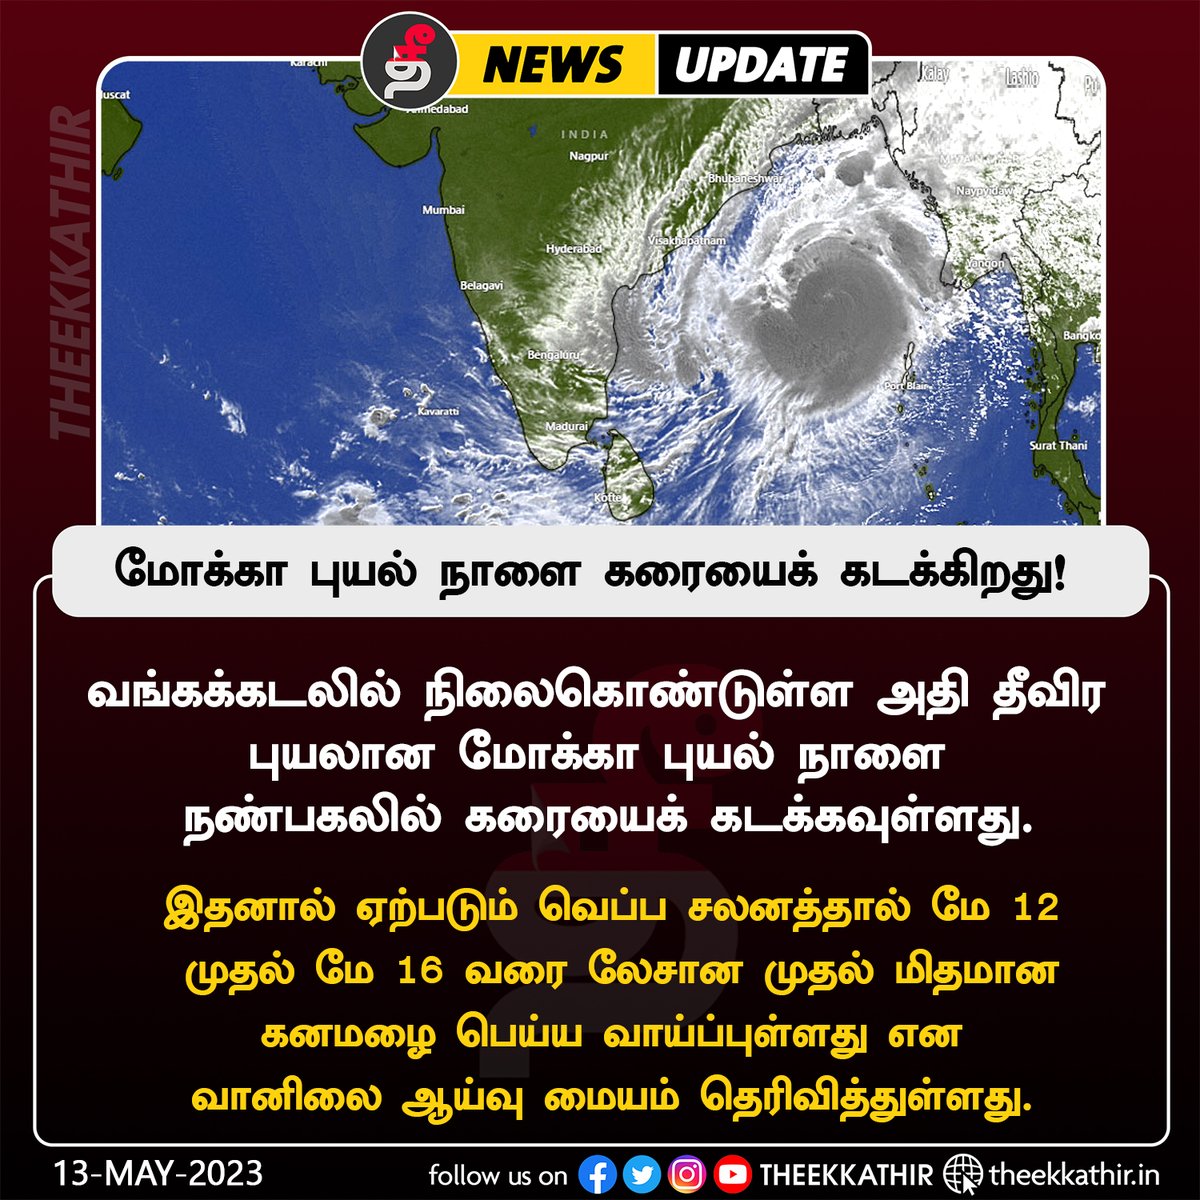 மோக்கா புயல் நாளை கரையைக் கடக்கிறது!

#Theekkathir | #Mokka | #CycloneNews | #india | #Tamilnadu